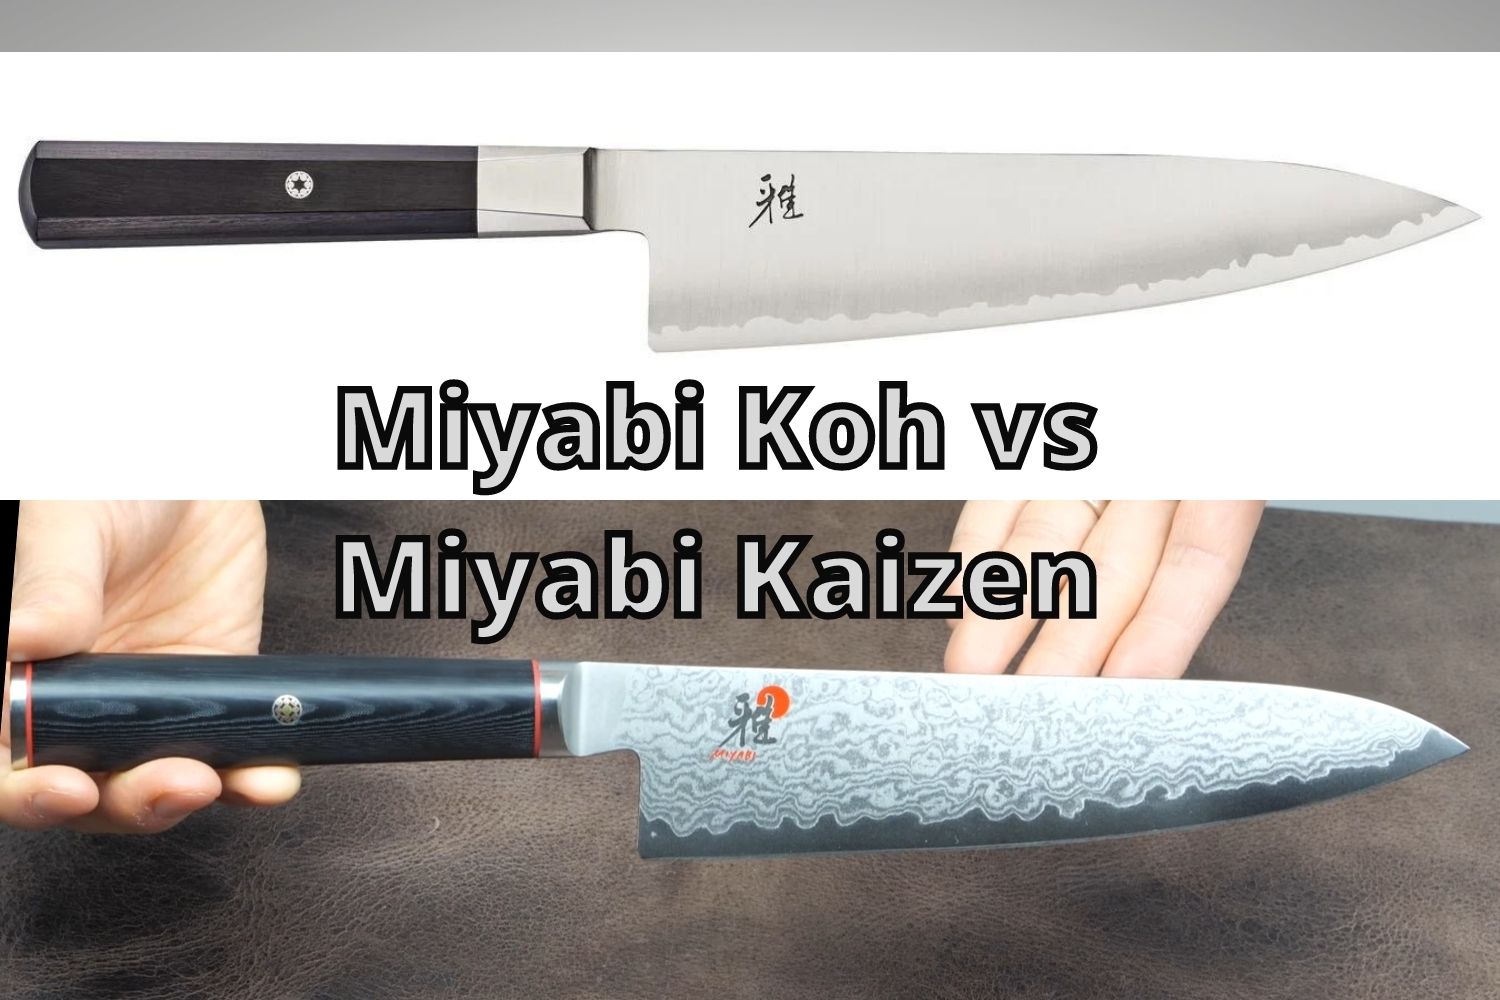 miyabi koh vs kaizen